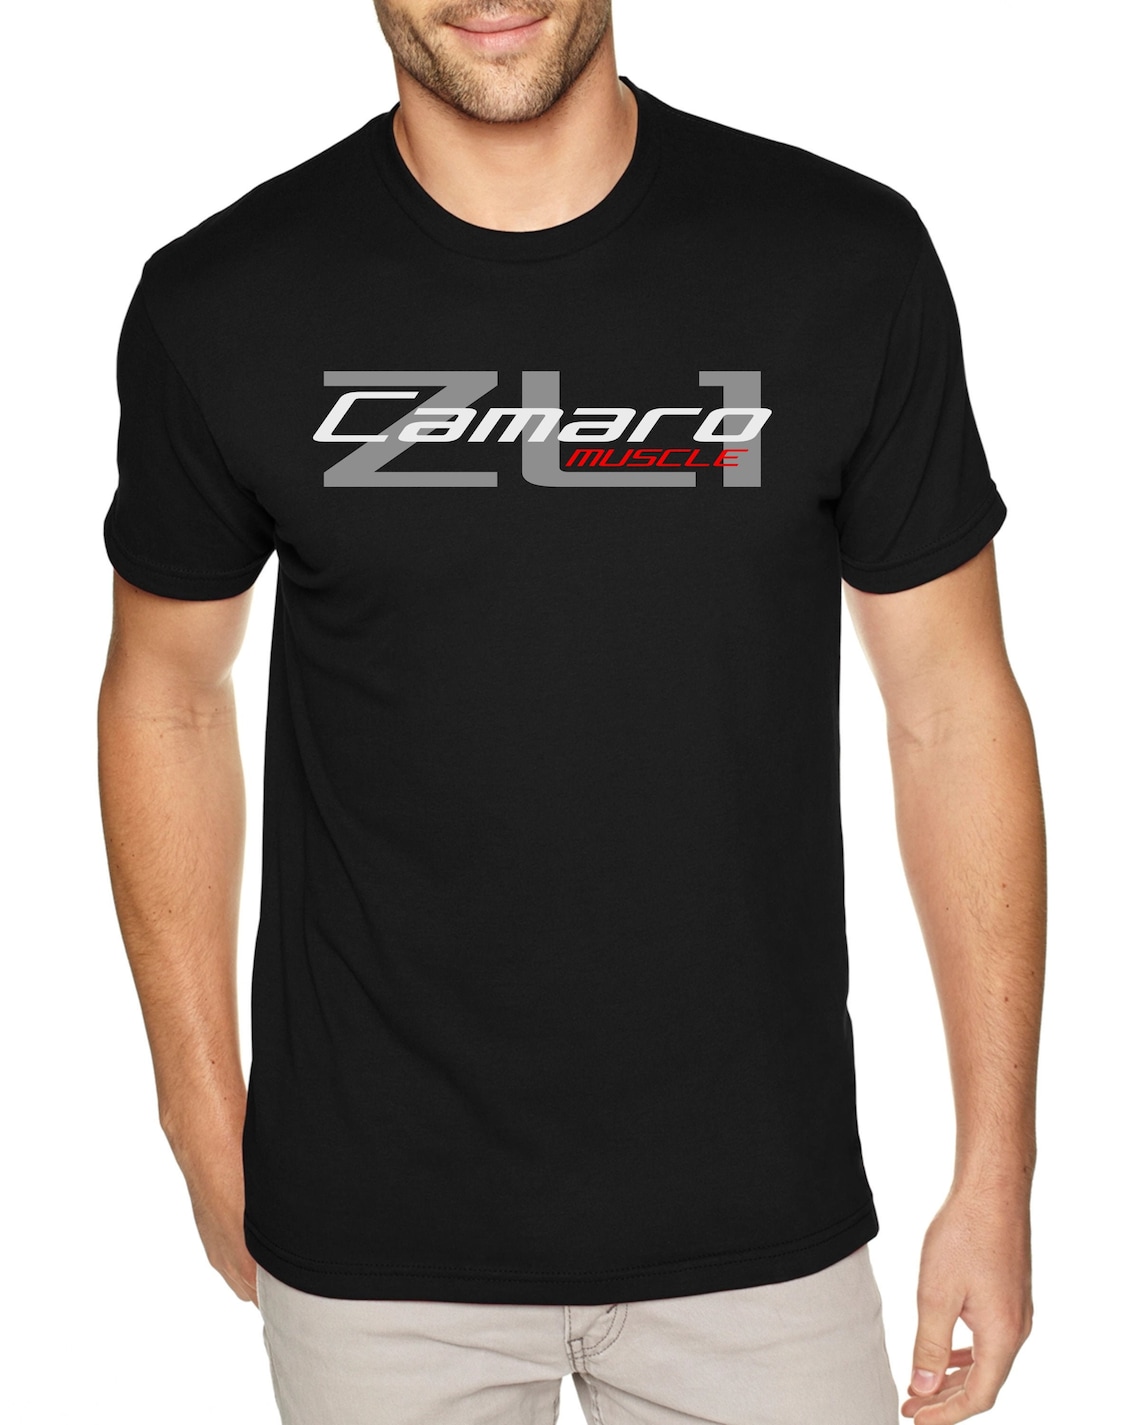 Camaro ZL1 Men's Black T-shirt, Muscle Car Shirt, 1968 1969 SS Camaro ...